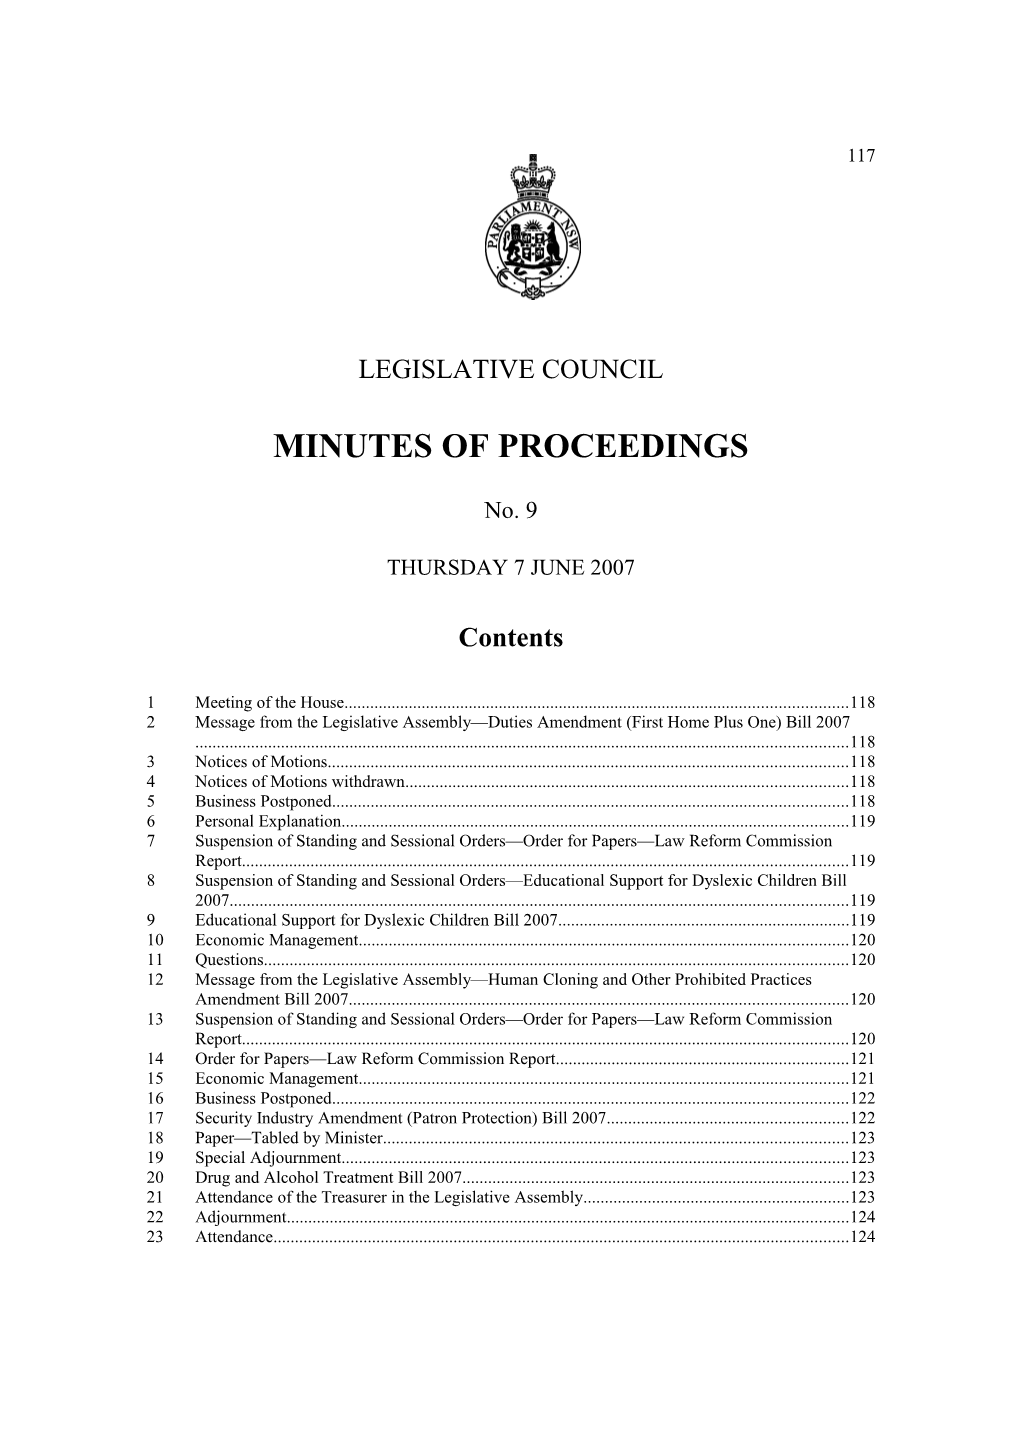 Legislative Council Minutes No. 9 Thursday 7 June 2007